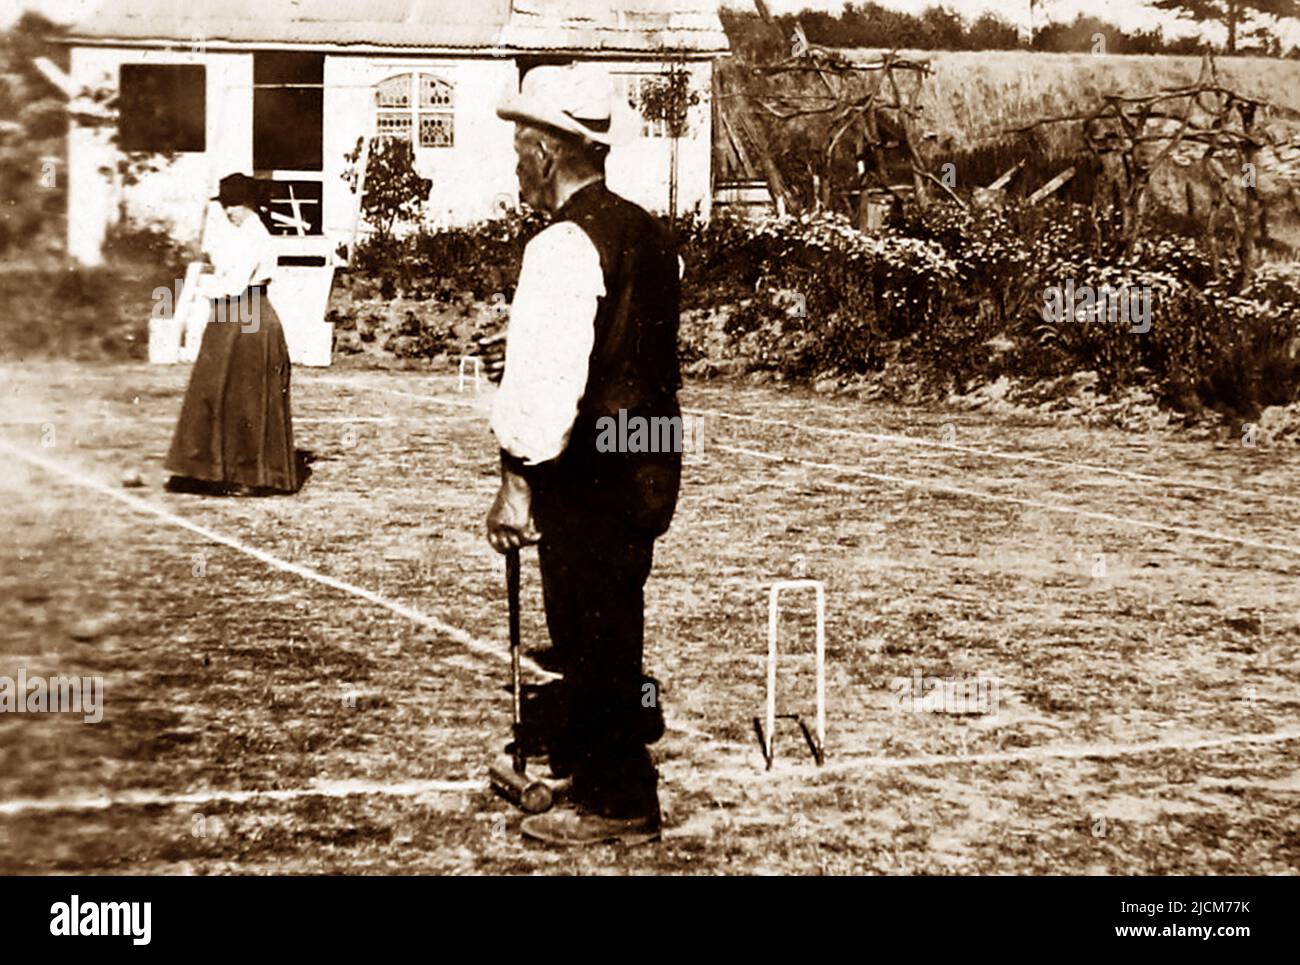 Jugando croquet, posiblemente 1870s Foto de stock